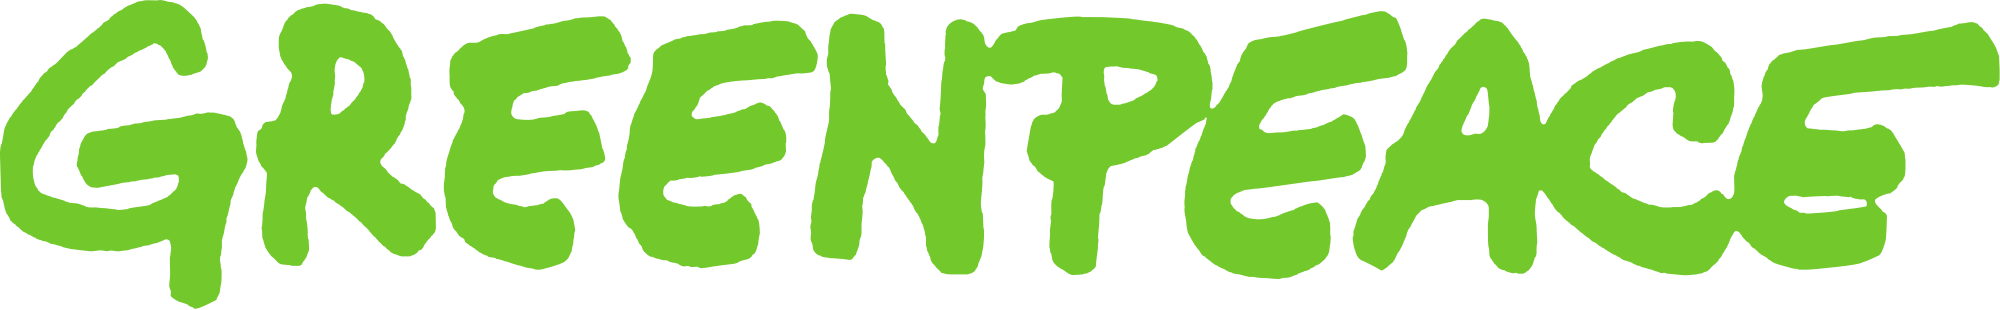 File:Greenpeace logo.svg